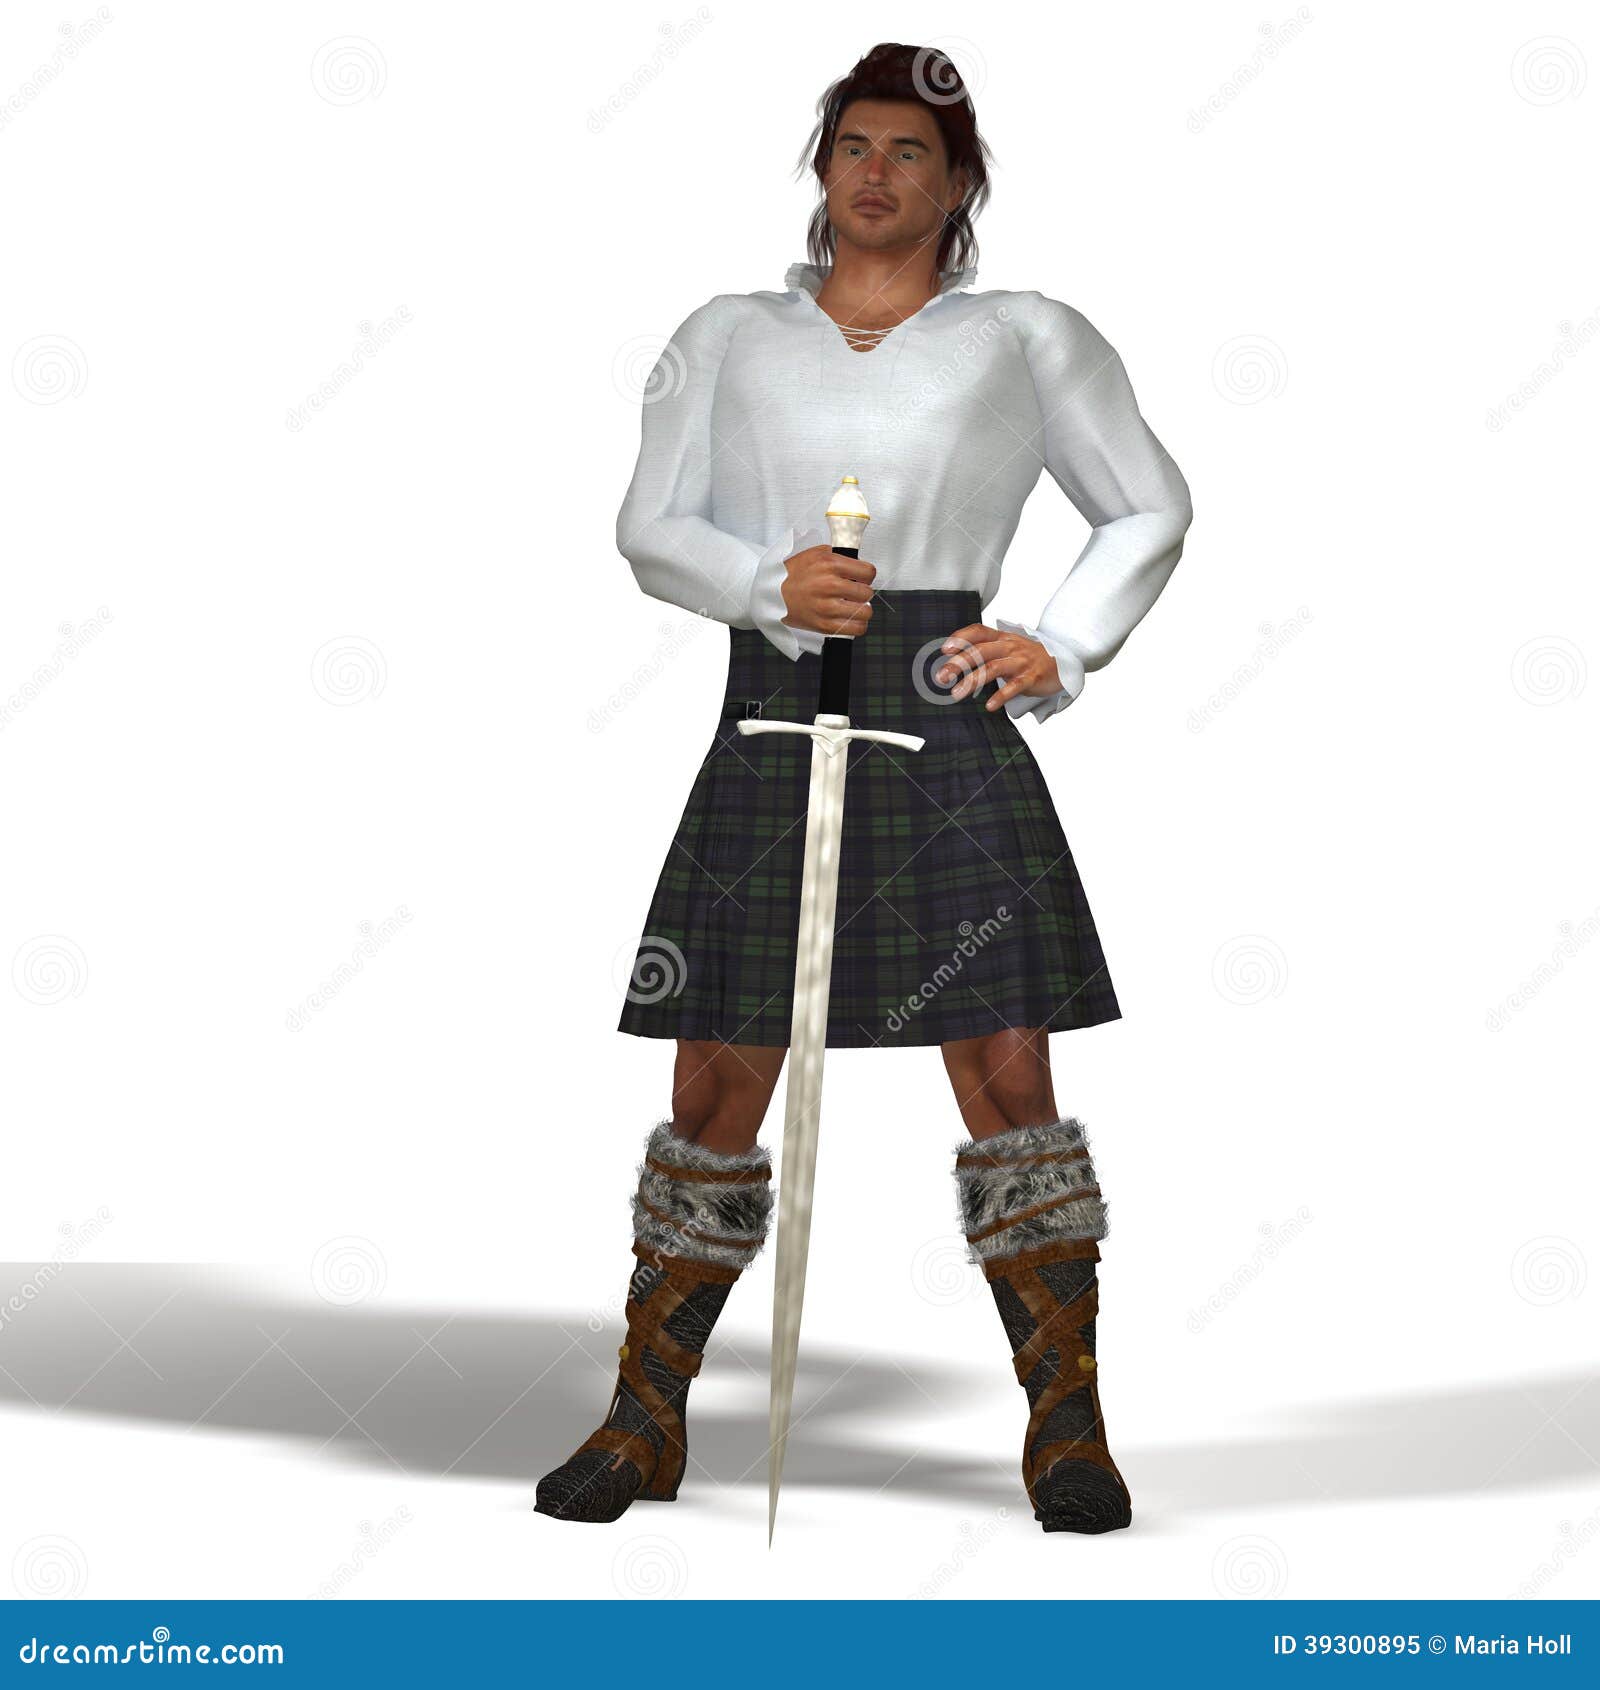 highlander with sword